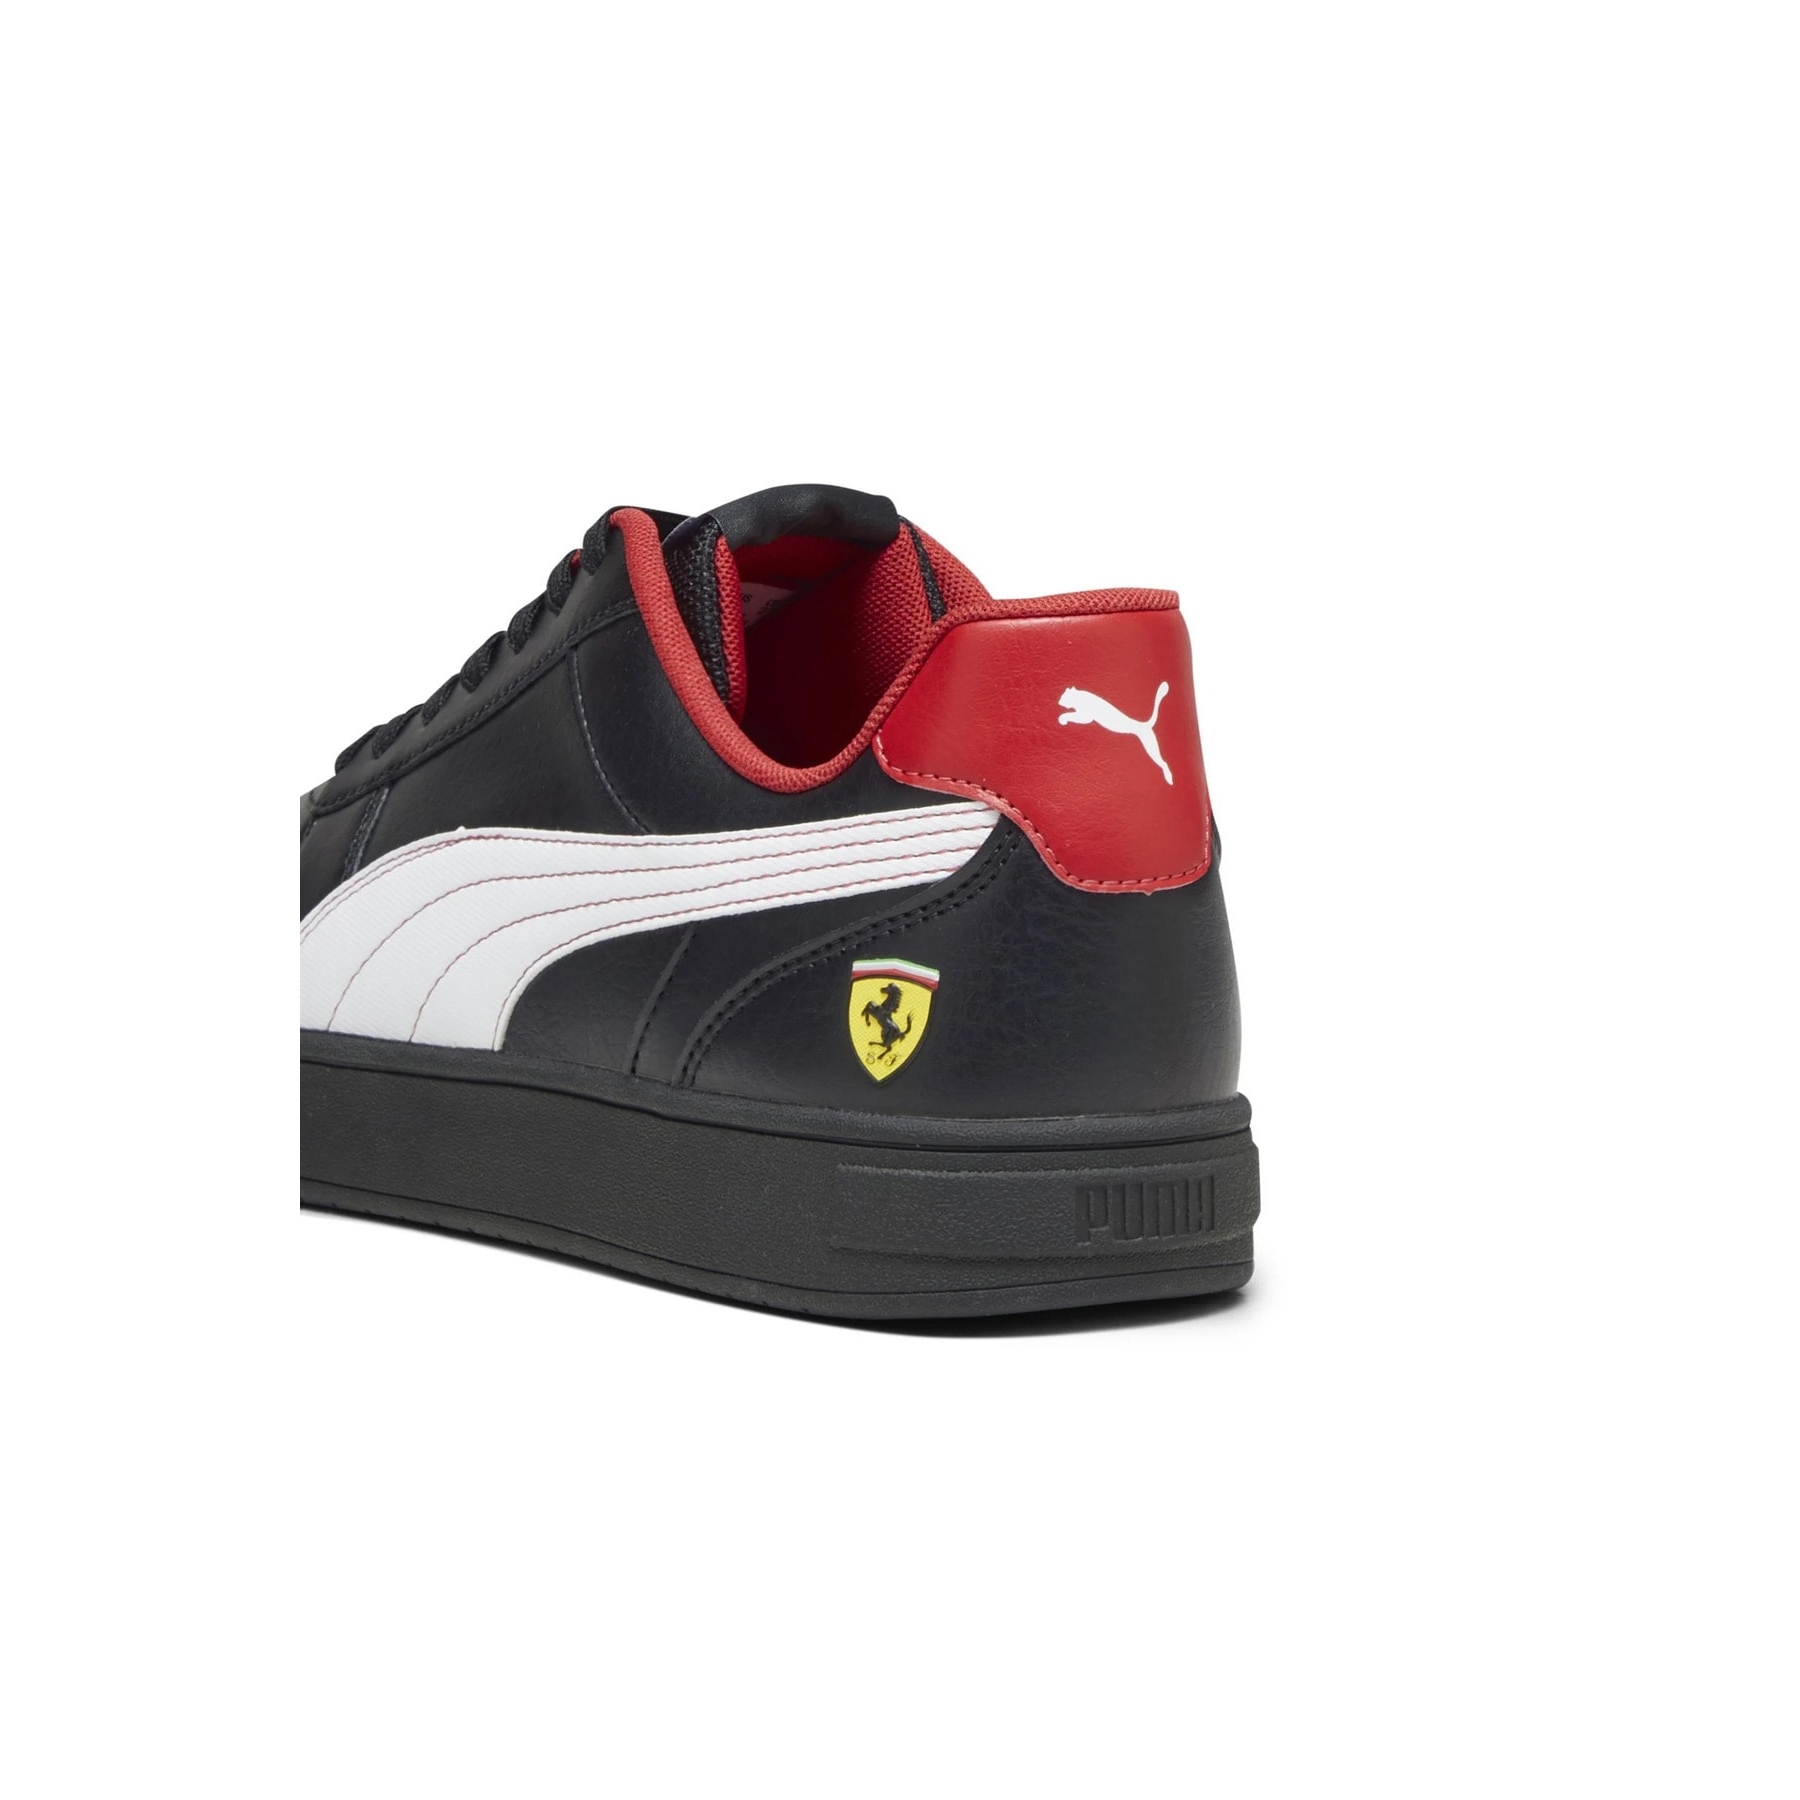 Puma Ferrari Caven Erkek Siyah Halı Saha Ayakkabısı (307960-03)